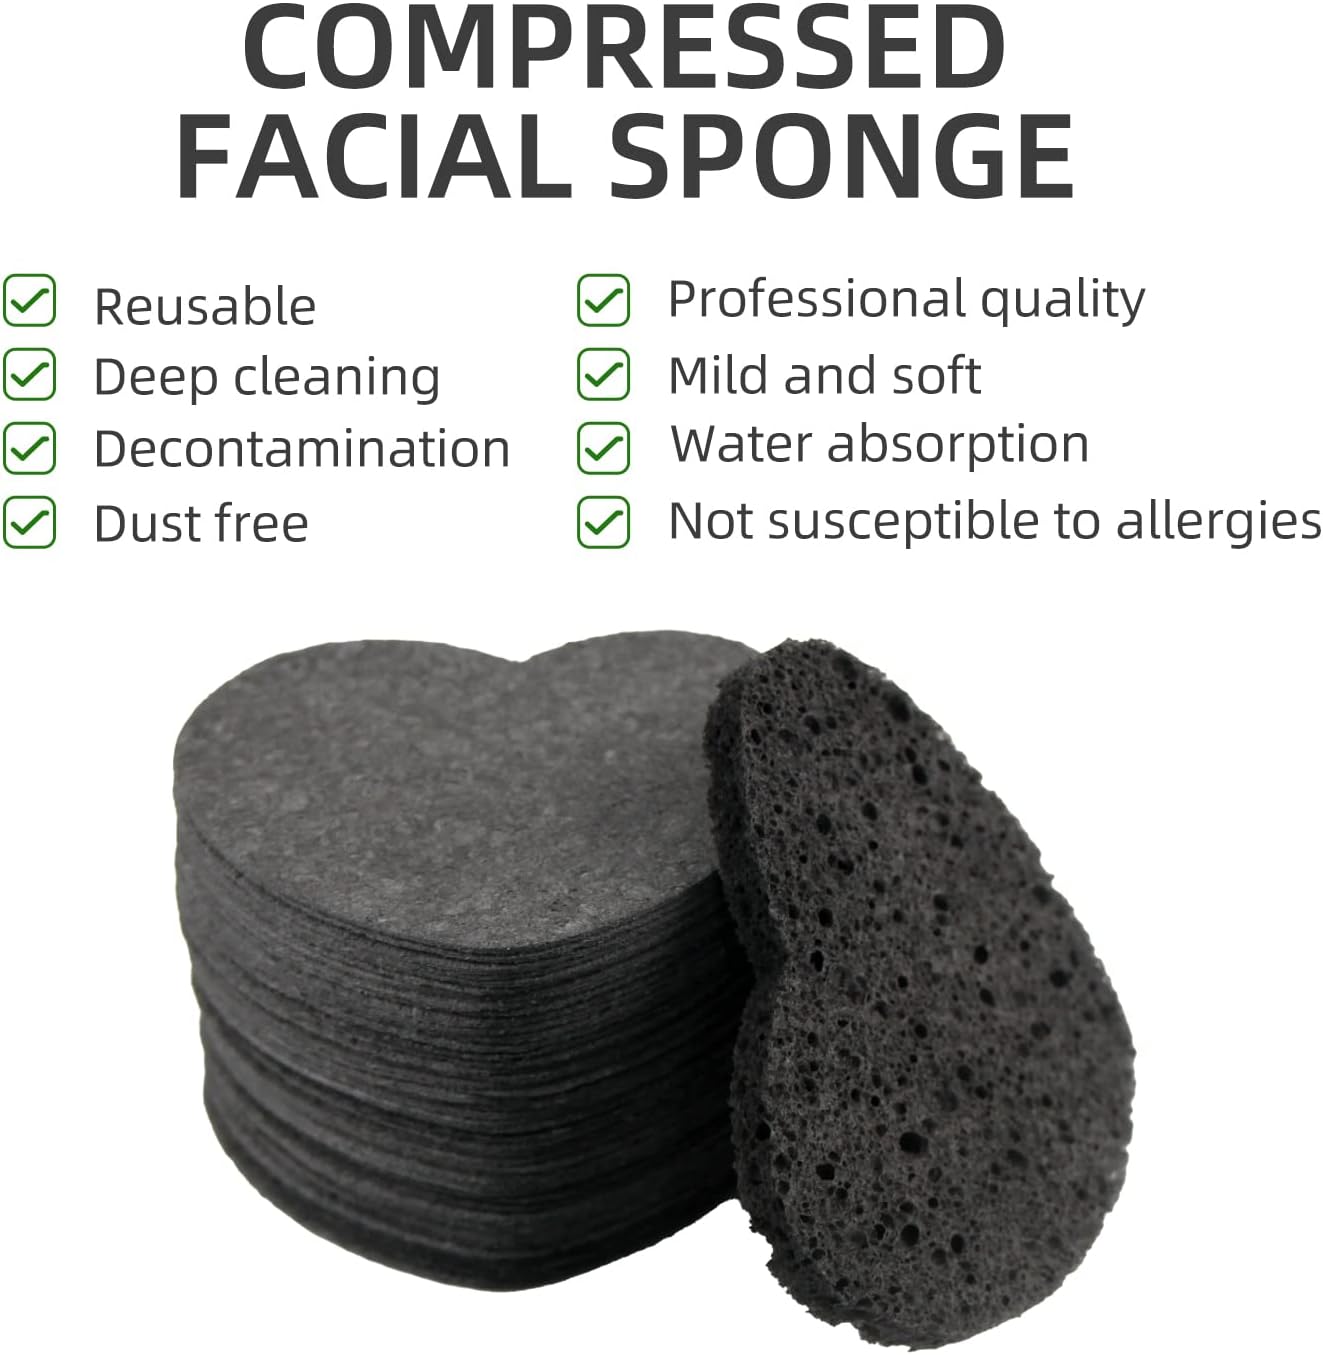 Spunspon Facial Sponges Compressed Natural Cellulose Sponge Spunspon Heart Shape Face Sponge for Face Cleansing Exfoliating and Makeup Removal 50 Count / 1 - Pack,Black